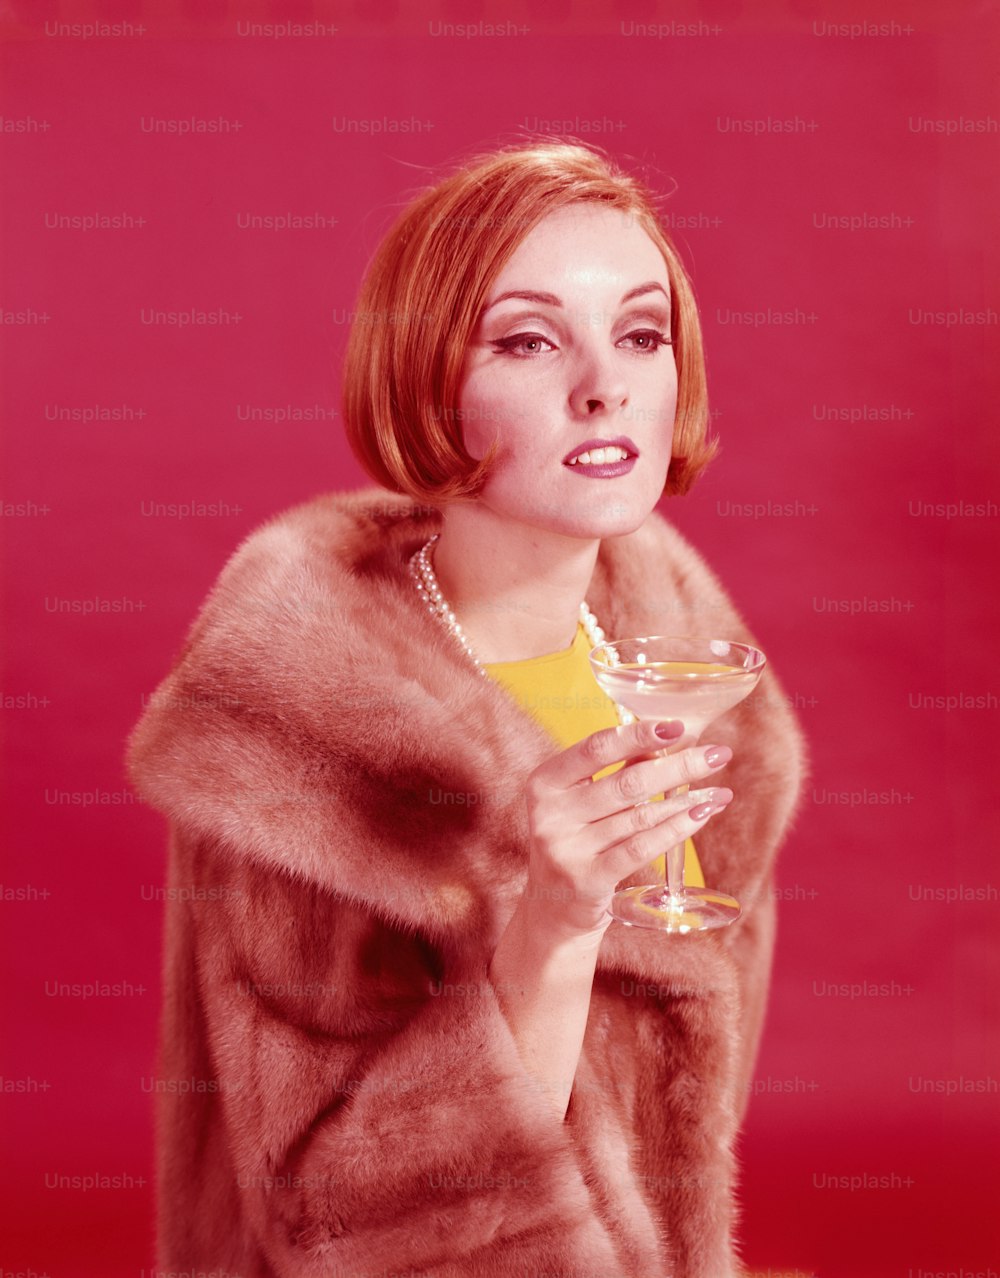 미국 - 1960년대경: 모피 코트를 입고 샴페인 잔을 들고 있는 여성.